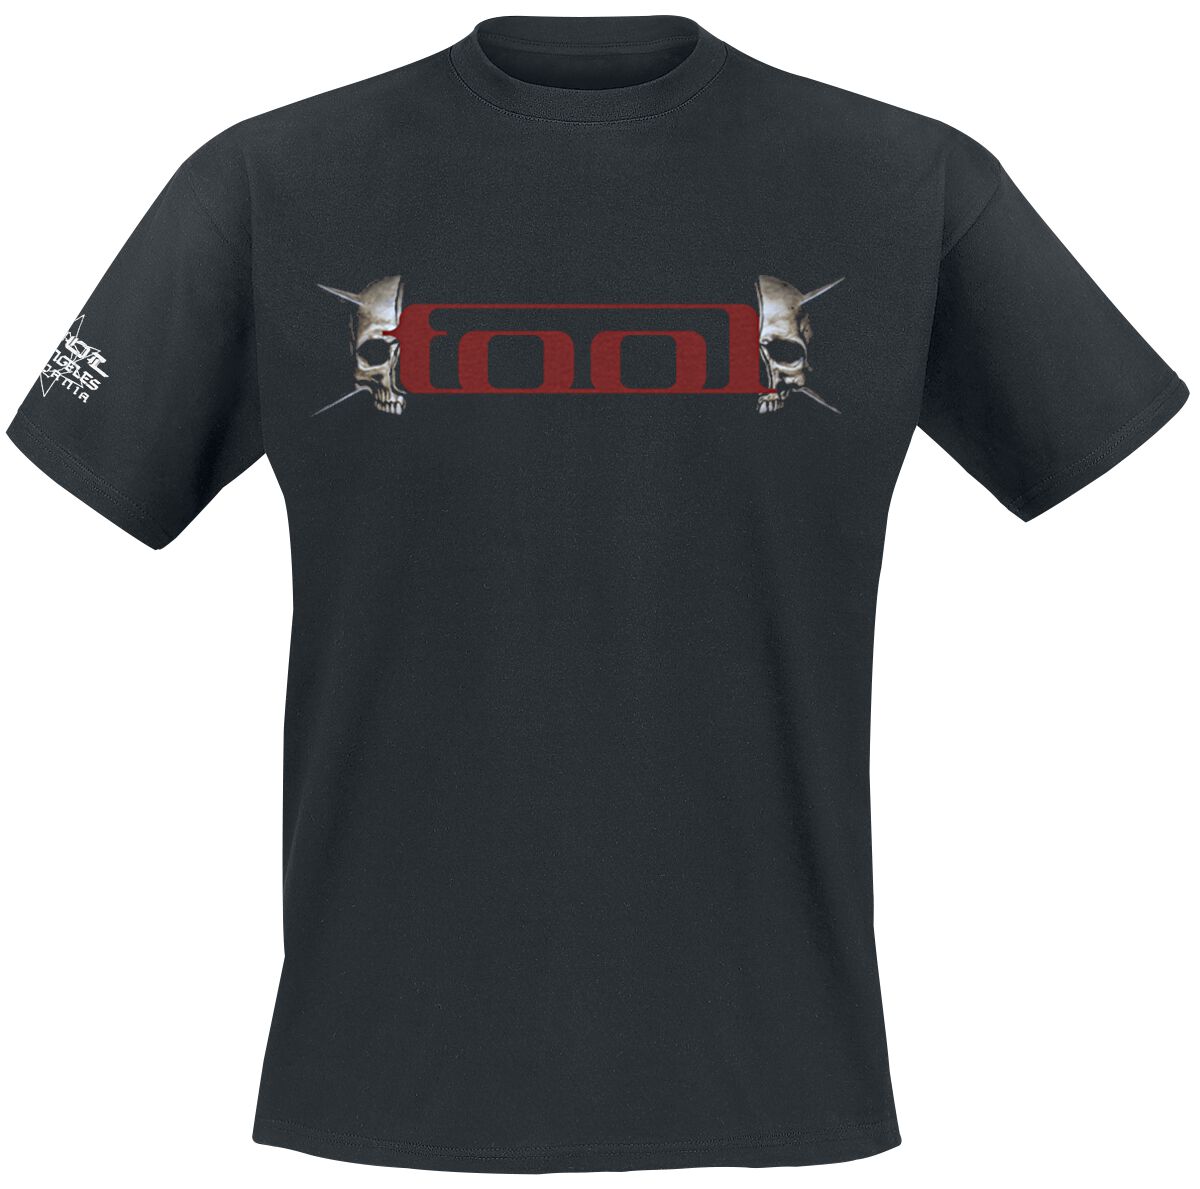 Tool T-Shirt - Skull Spikes - S bis XXL - für Männer - Größe S - schwarz  - Lizenziertes Merchandise!